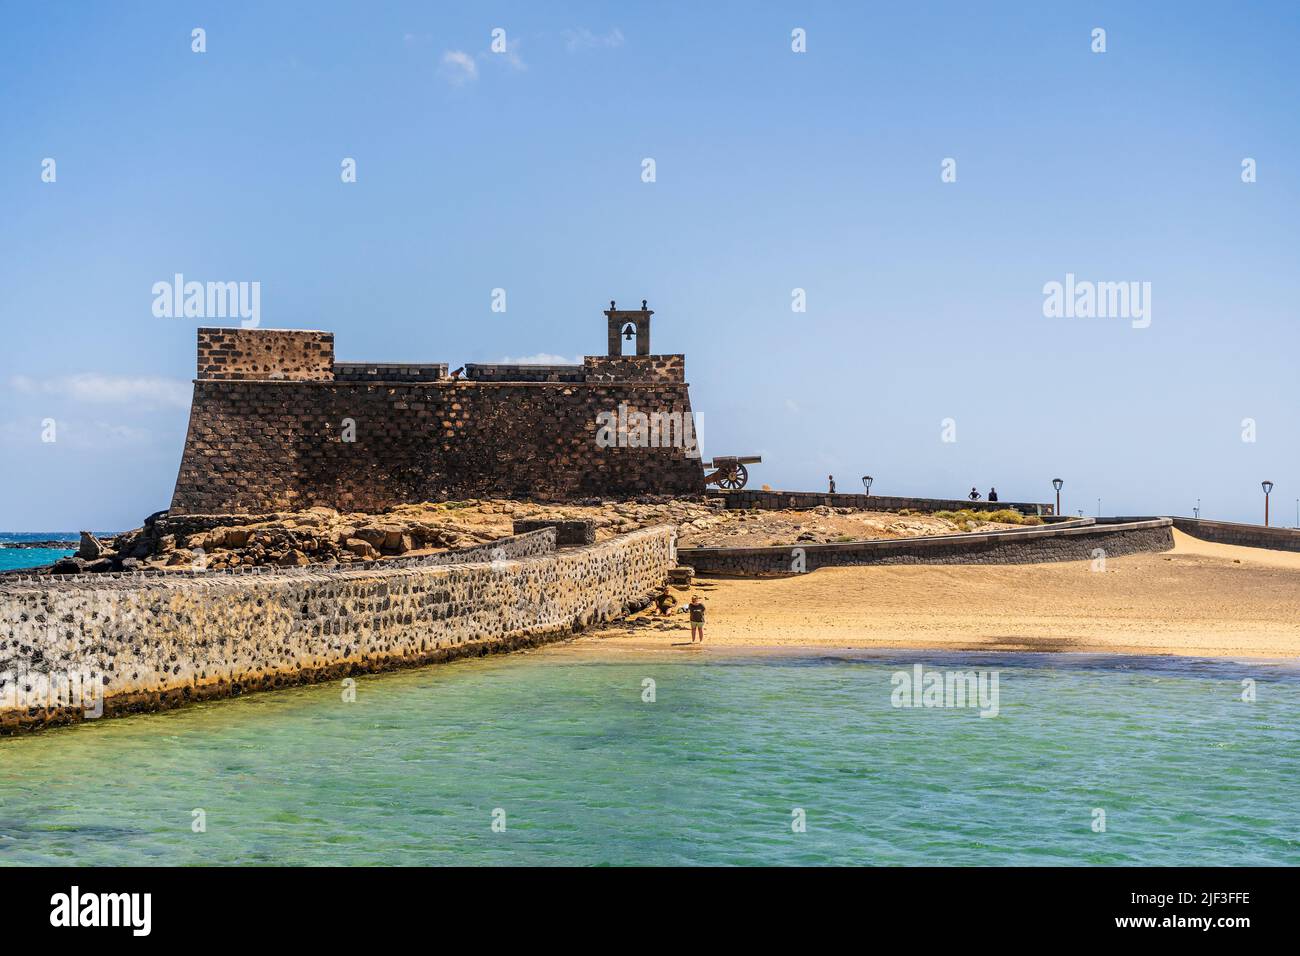 Histórico Castillo de San Gabriel con puentes que conducen a él, Arrecife, Lanzarote, Islas Canarias, España Foto de stock